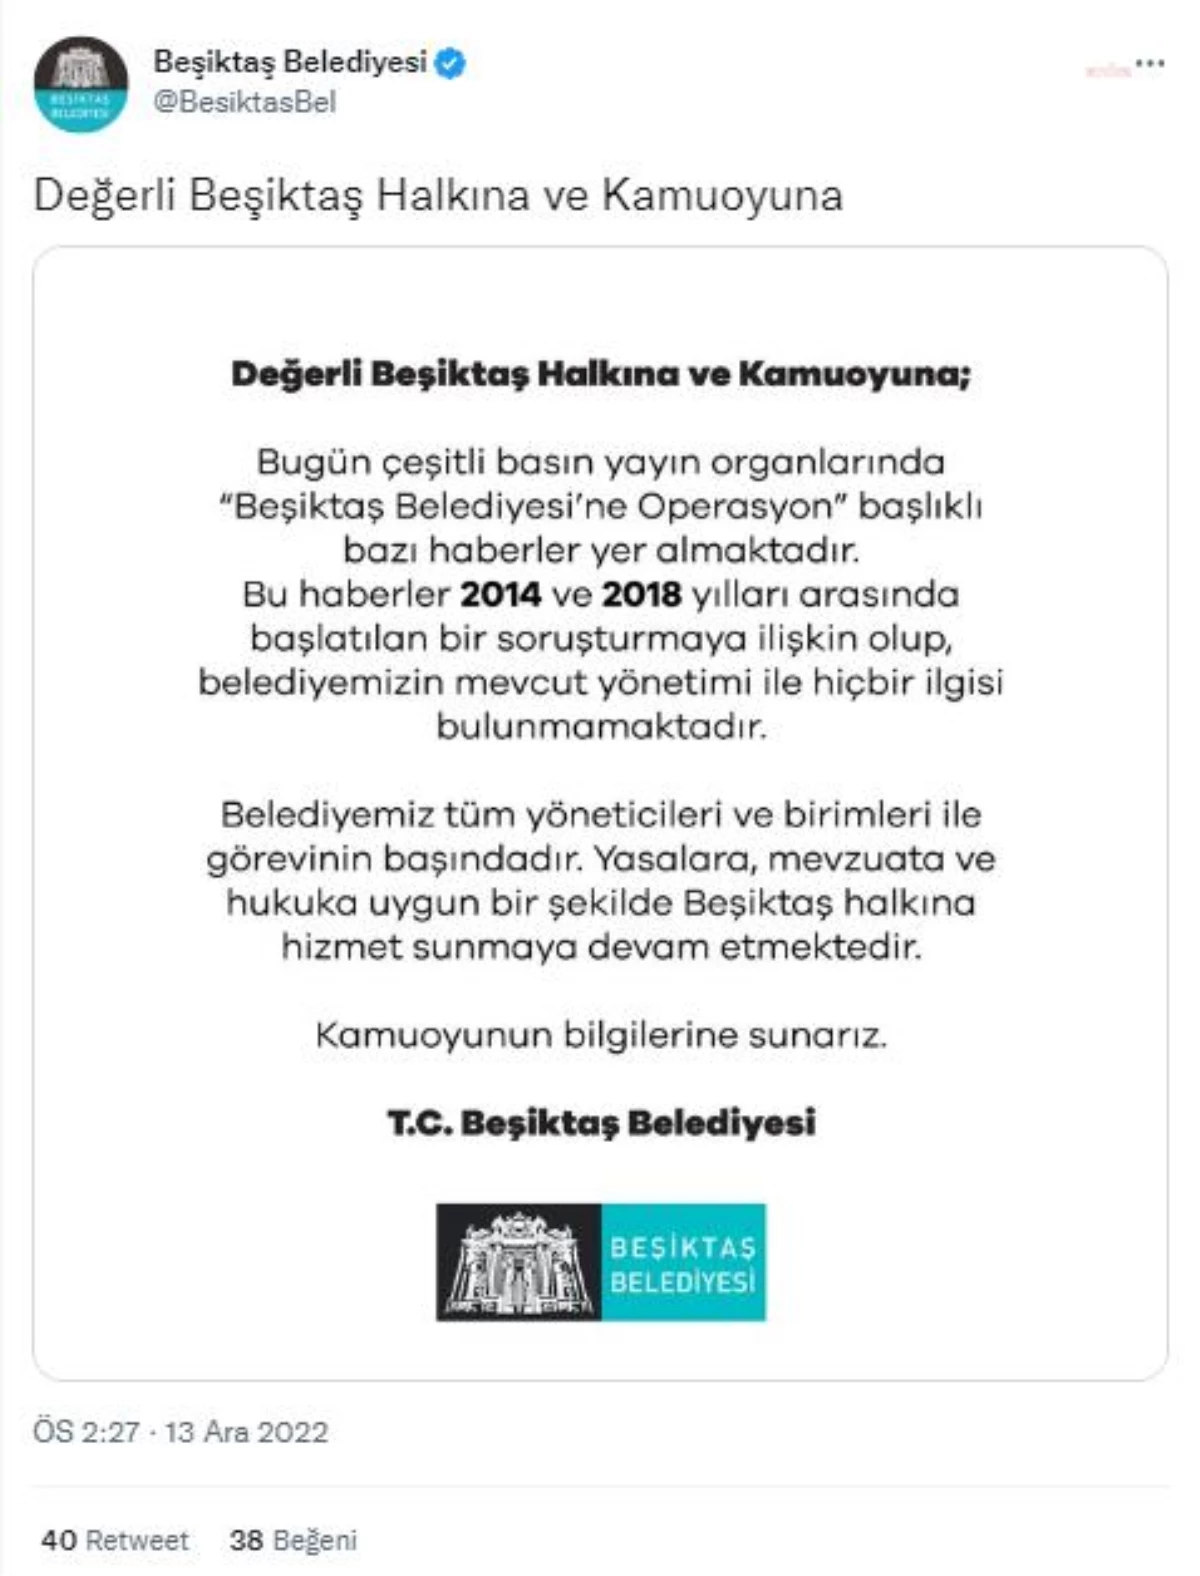 Beşiktaş Belediyesi: "Yapılan Operasyonun Belediyemizin Mevcut Yönetimiyle İlgisi Bulunmamaktadır"